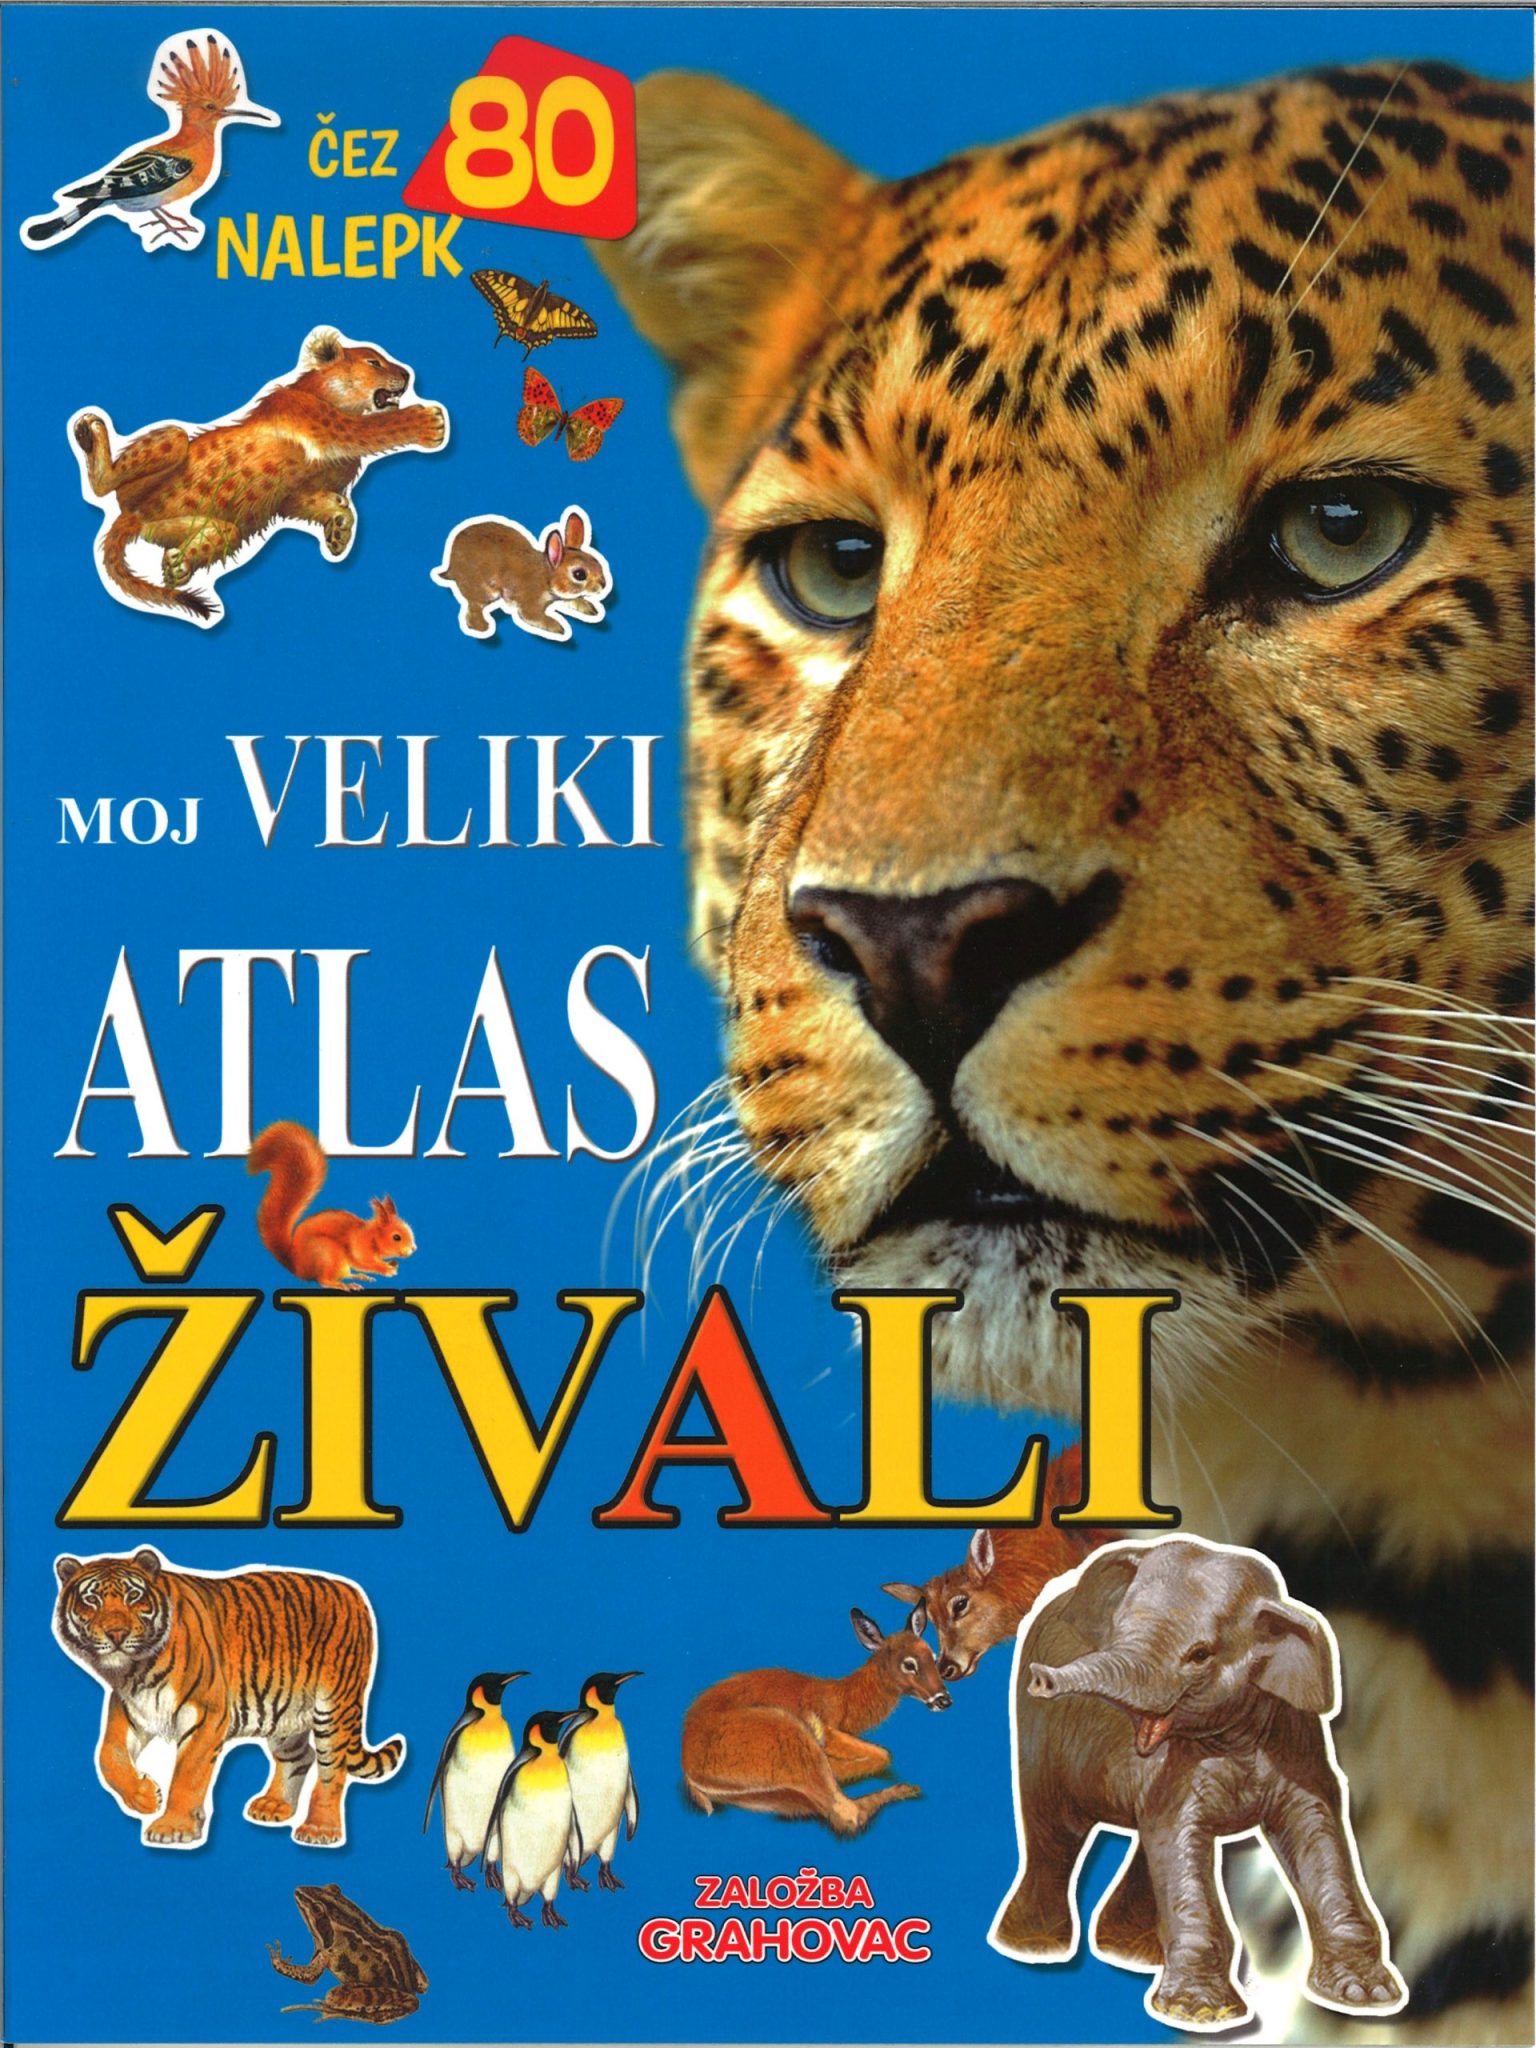 Moj veliki atlas živali G.A.